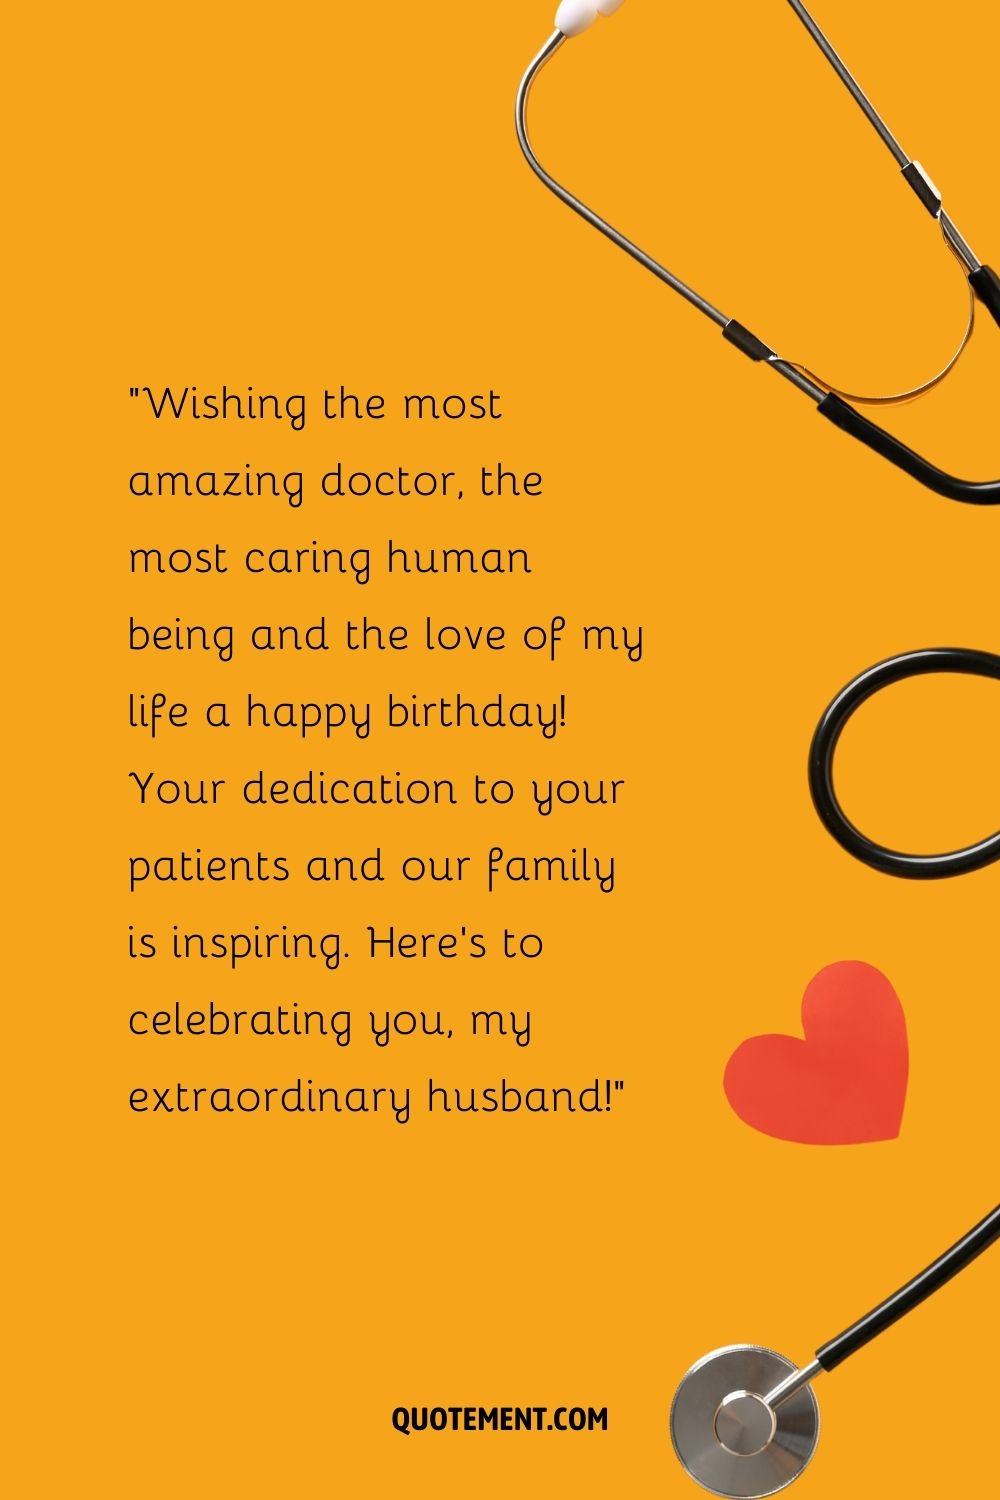 corazón rojo sobre fondo amarillo que representa un deseo de cumpleaños a un médico